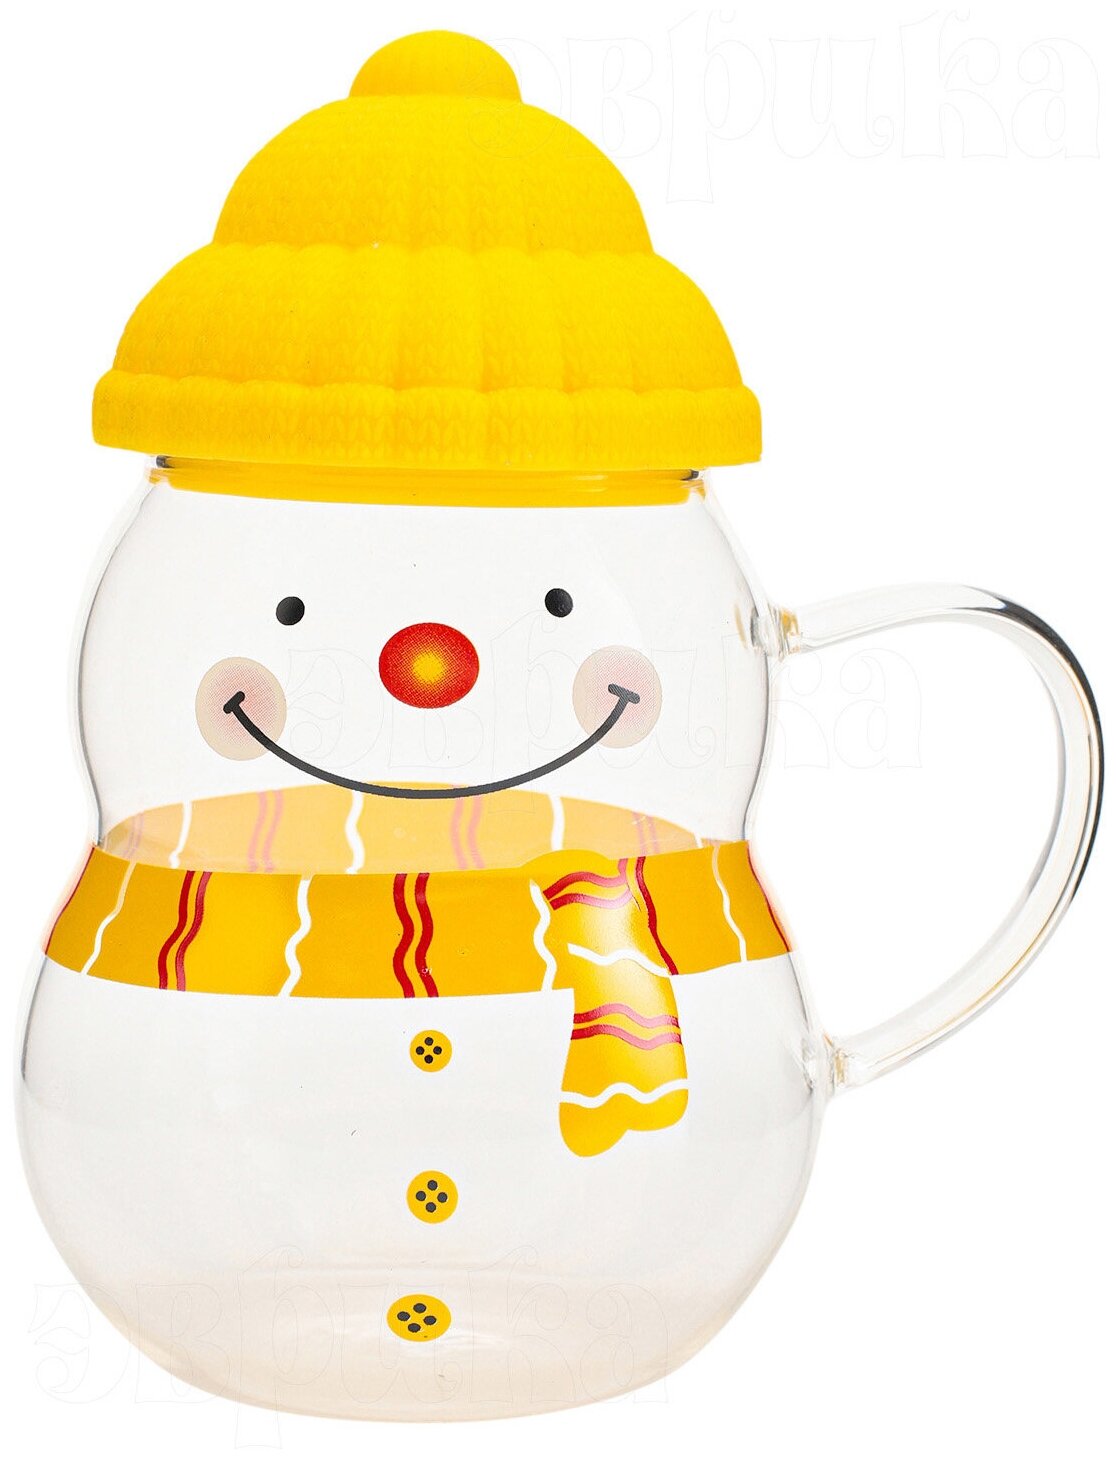 Кружка стеклянная Снеговик желтый 450 мл, кружка с крышкой новогодняя, подарочная, символ года